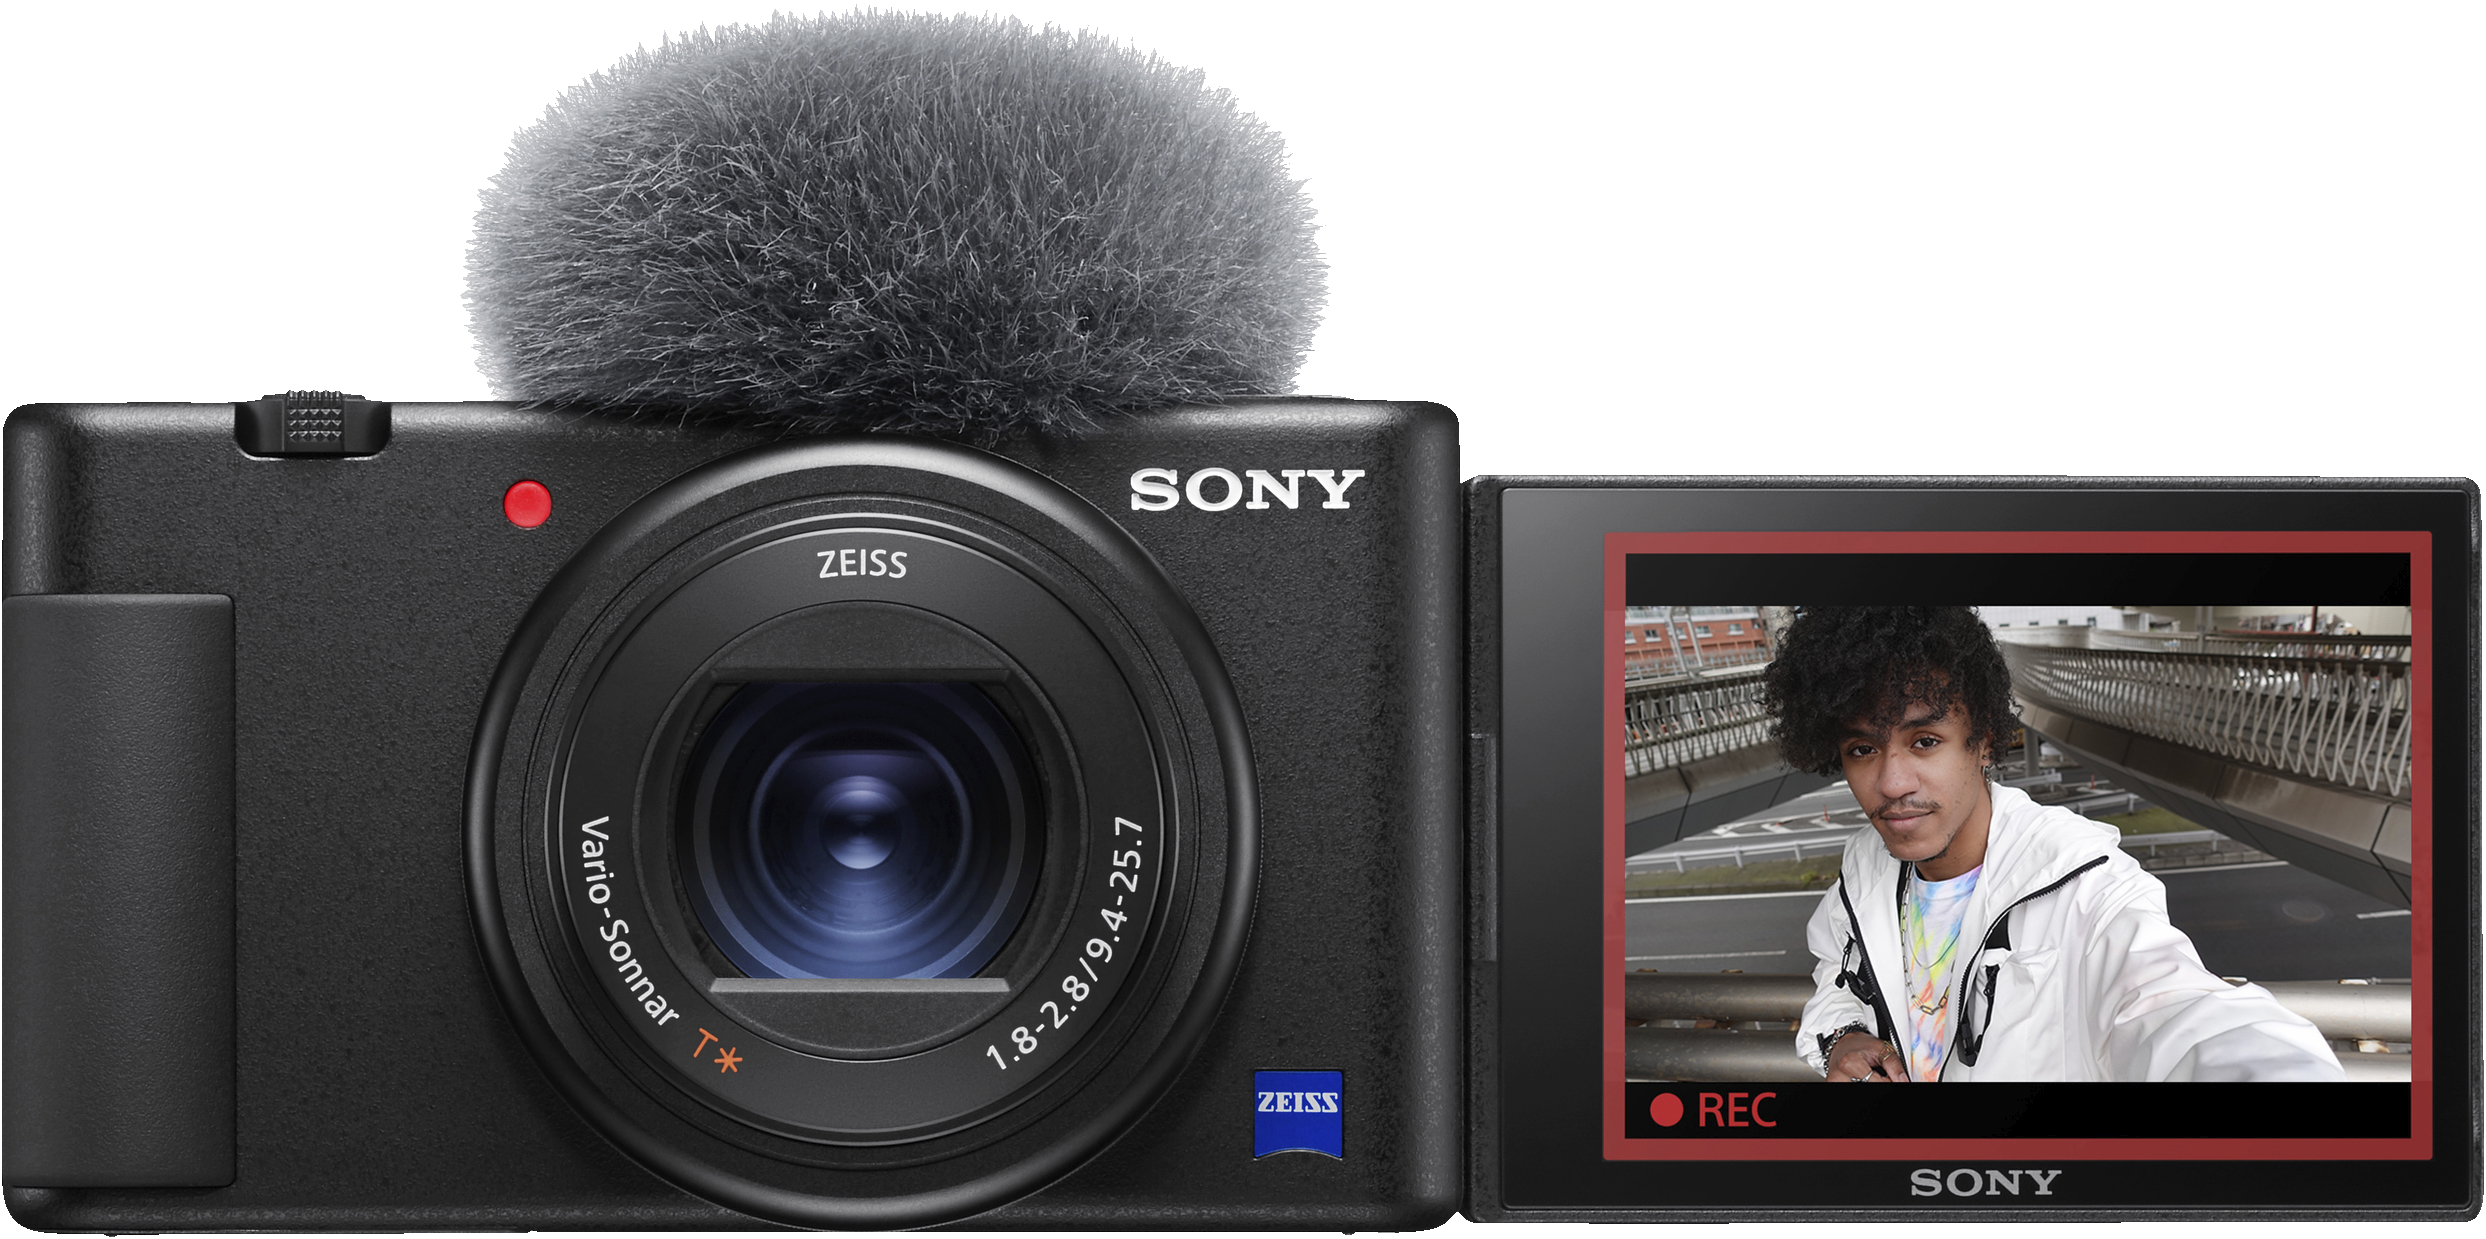 Sony digitalkamera ZV-1 ble kåret til årets vlog kamera 2020 av EISA (Expert imaging and sound association).